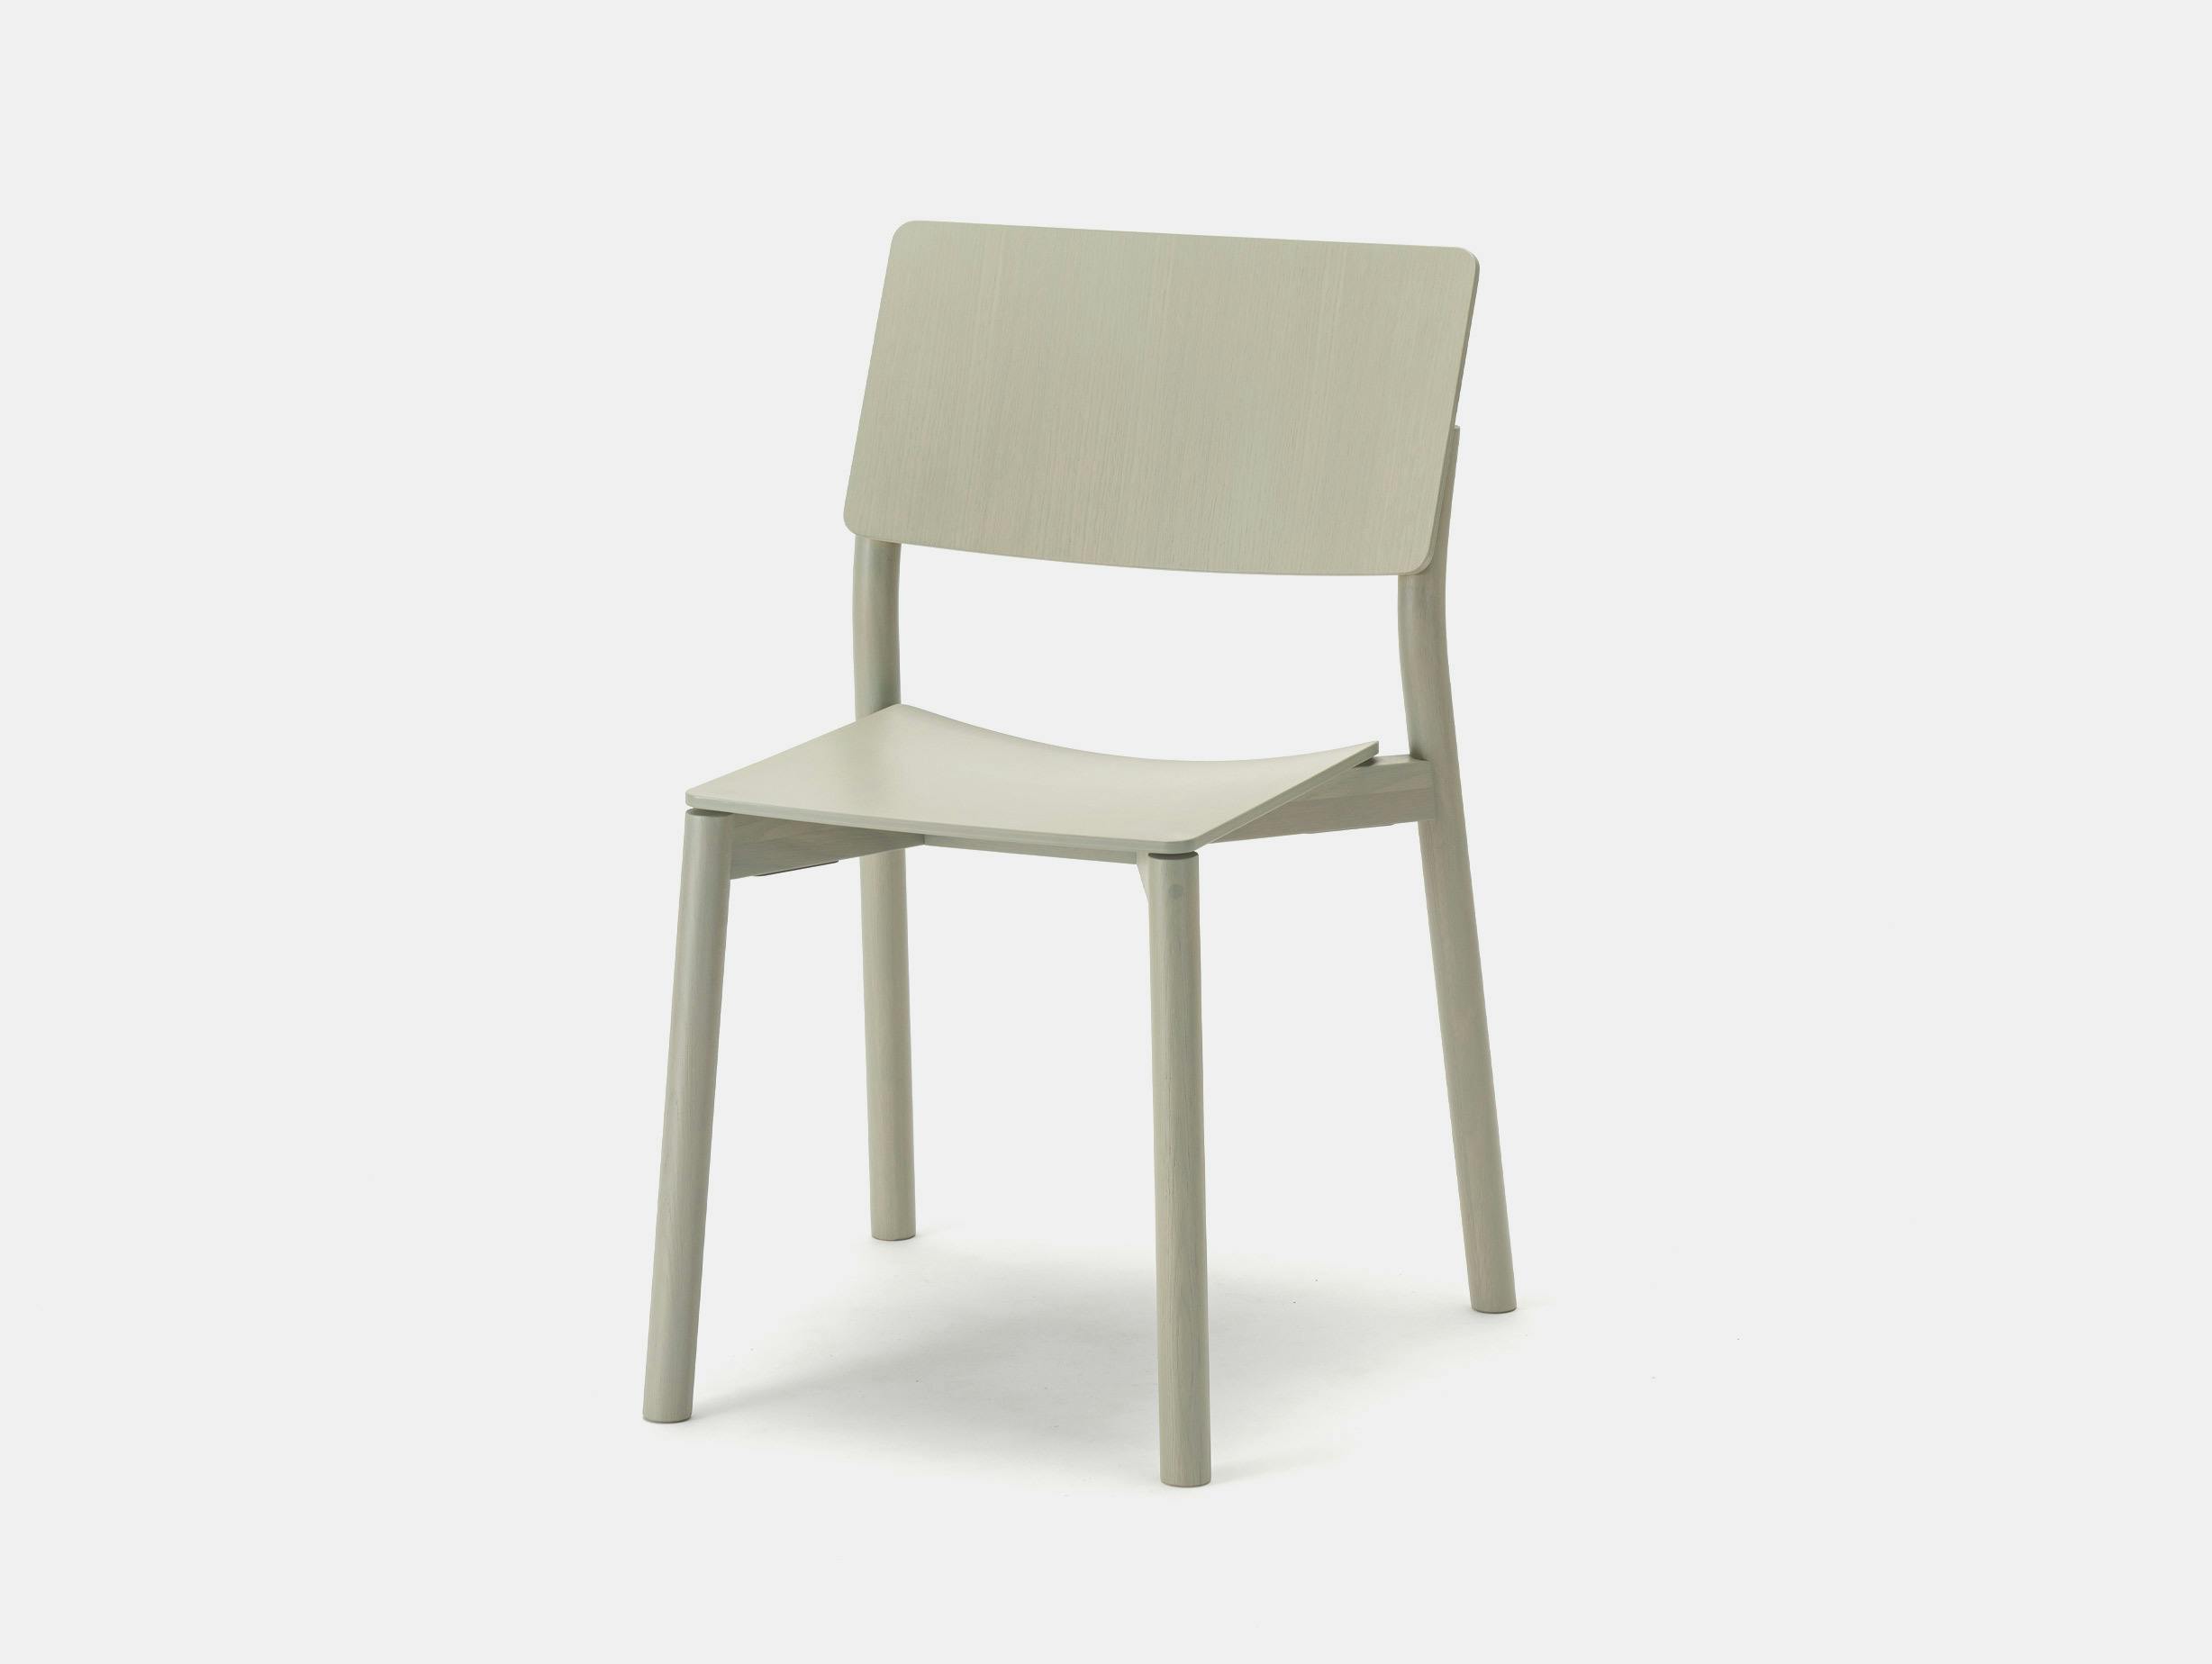 Karimoku panorama chair grey green geckeler michels